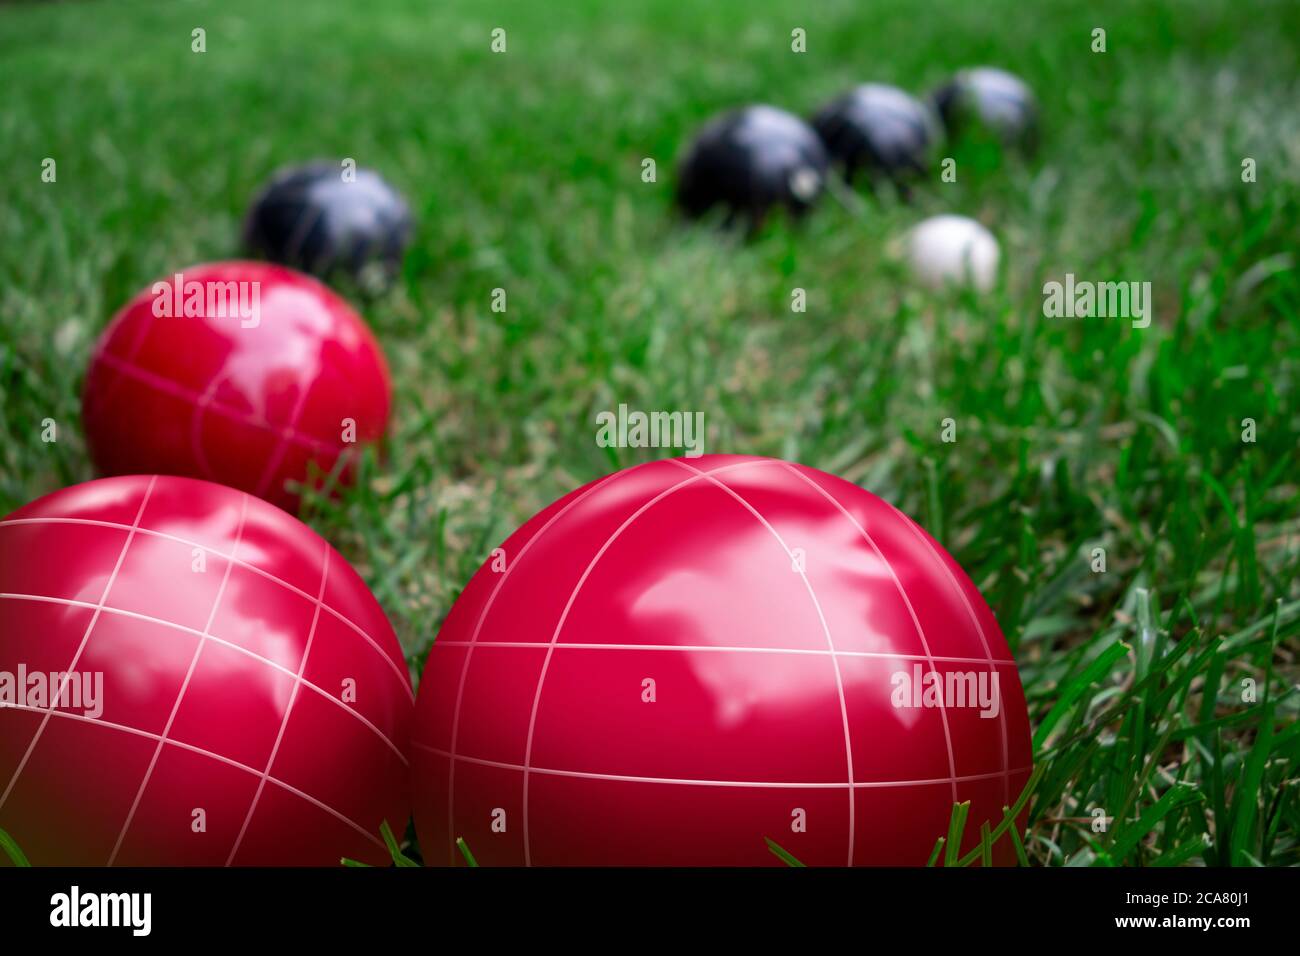 Boules de bocci rouges et bleu foncé sur une pelouse verte en herbe jouant au jeu Banque D'Images